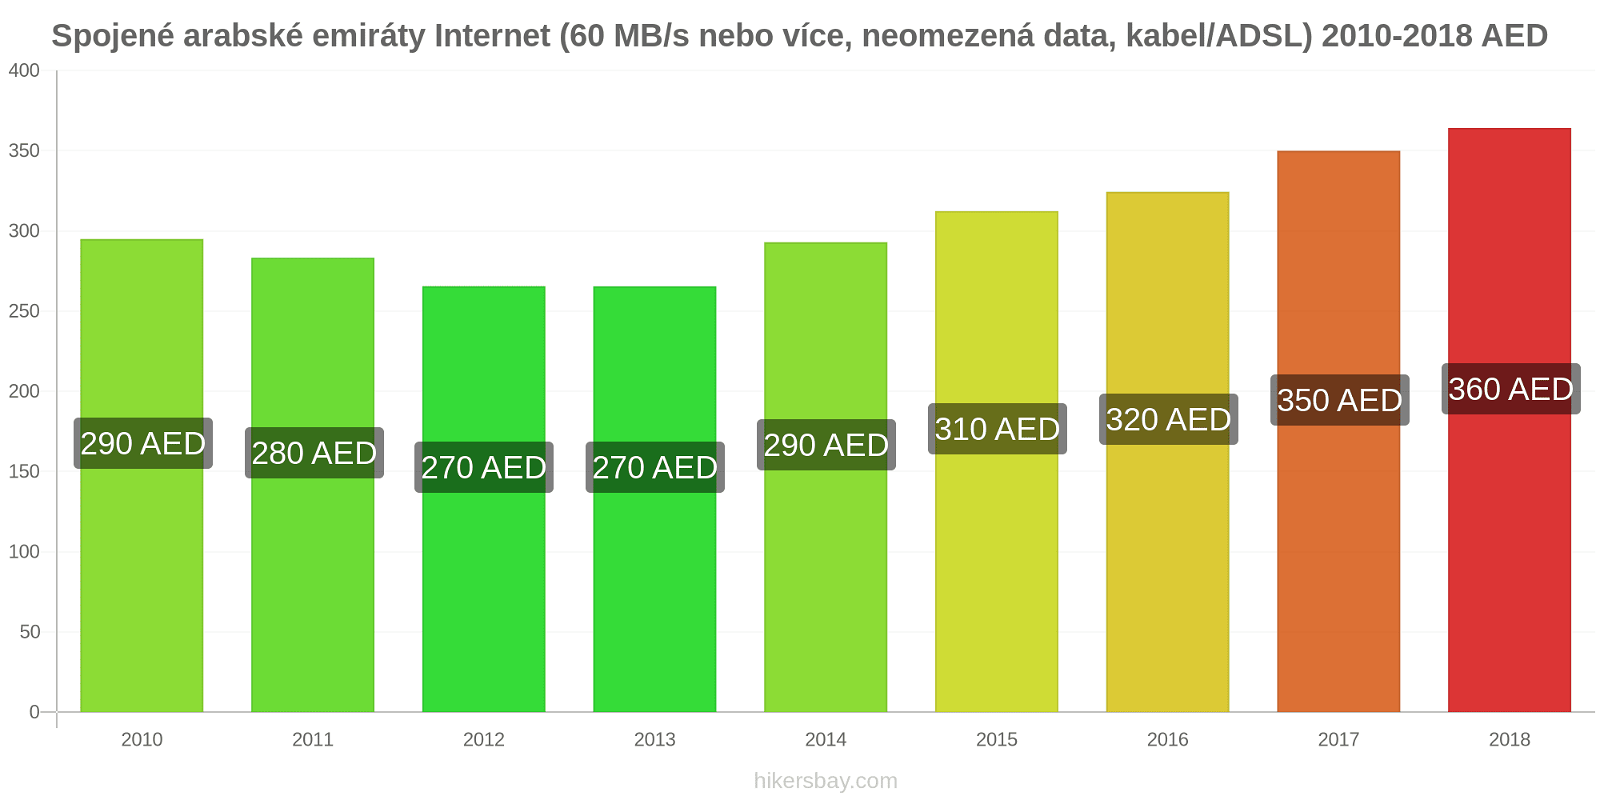 Spojené arabské emiráty změny cen Internet (60 Mbps nebo více, neomezená data, kabel/ADSL) hikersbay.com